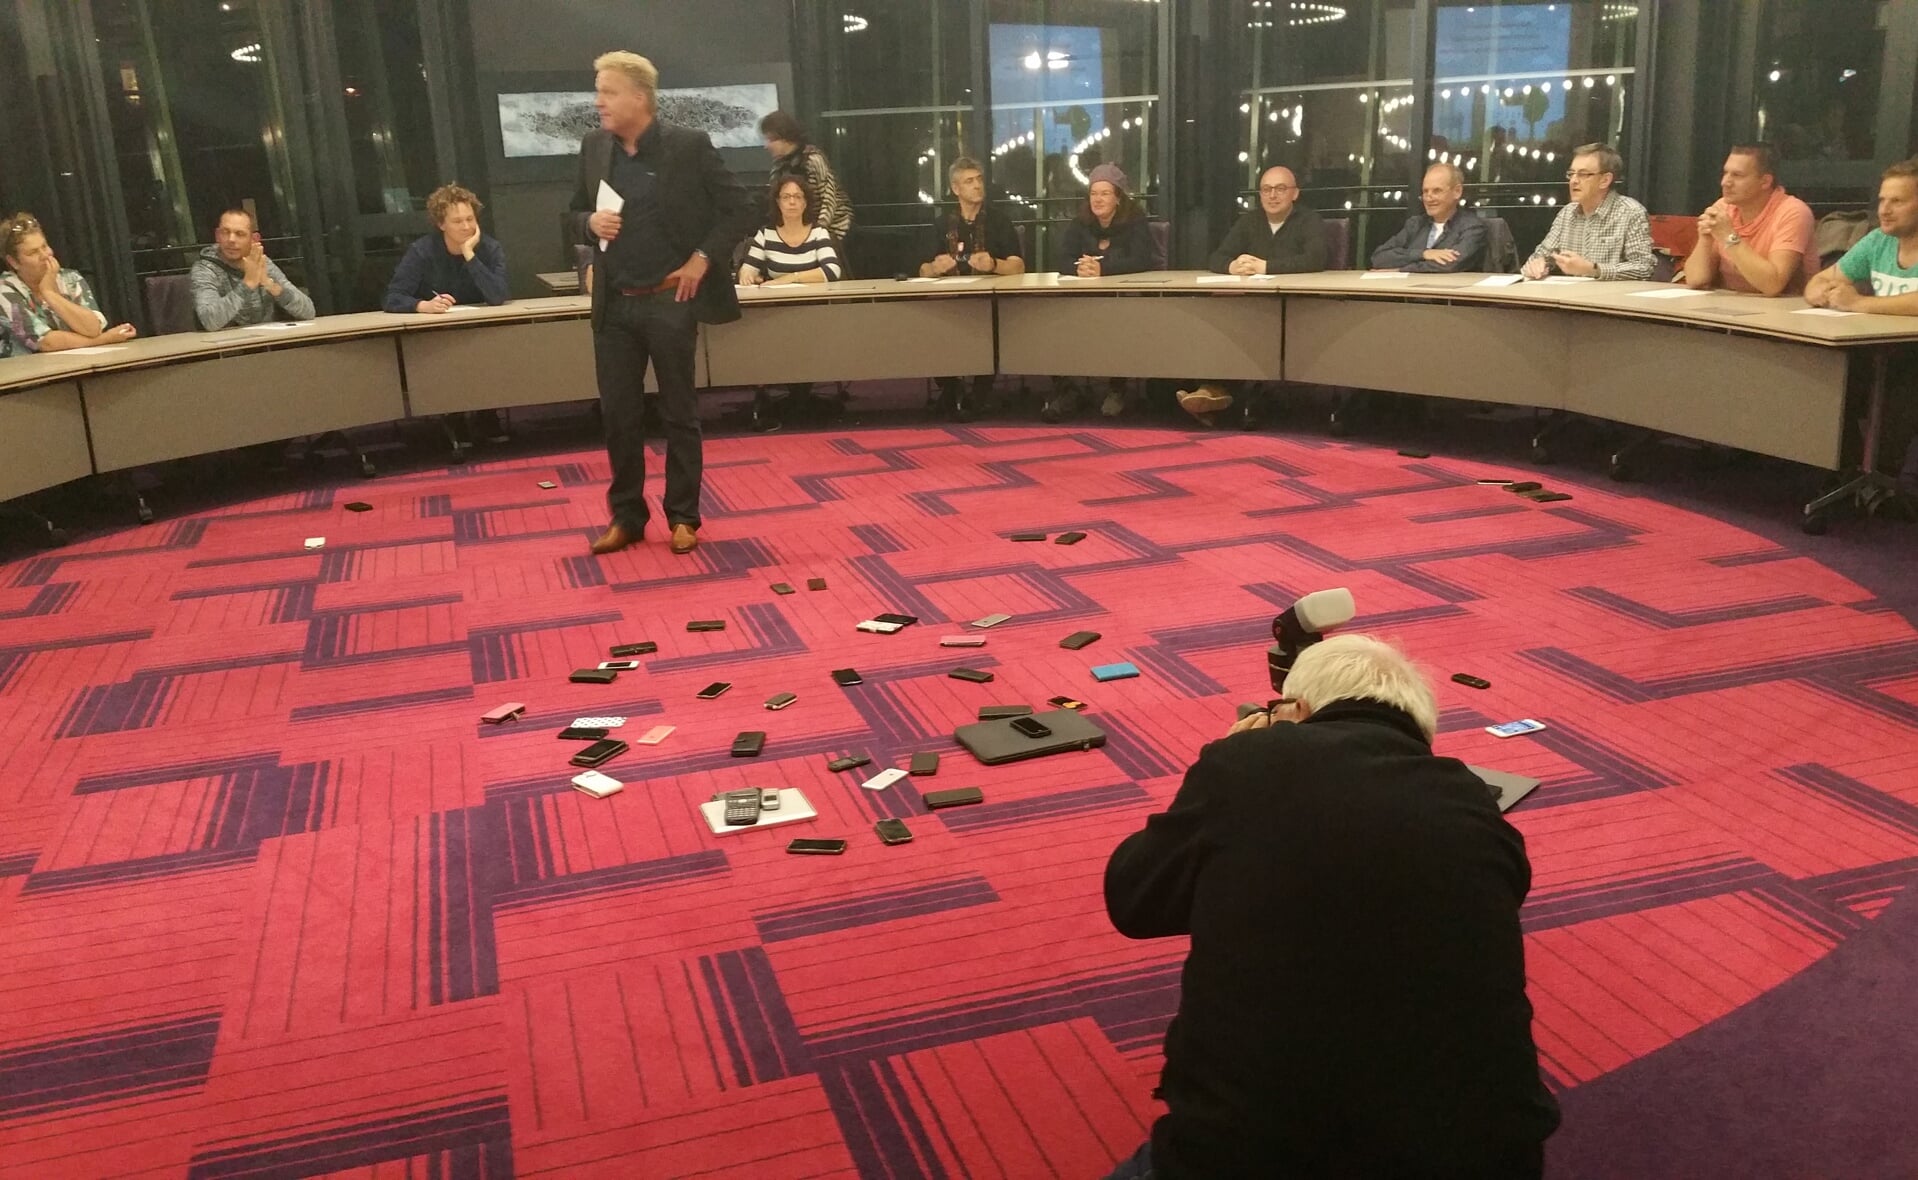 Burgemeester mark Buijs leidt de quizronde in het Boxtelse gemeentehuis. Alle smartphones, iPad's en laptops moesten op de vloer worden gelegd om spieken te voorkomen... (Foto: Marc Cleutjens).